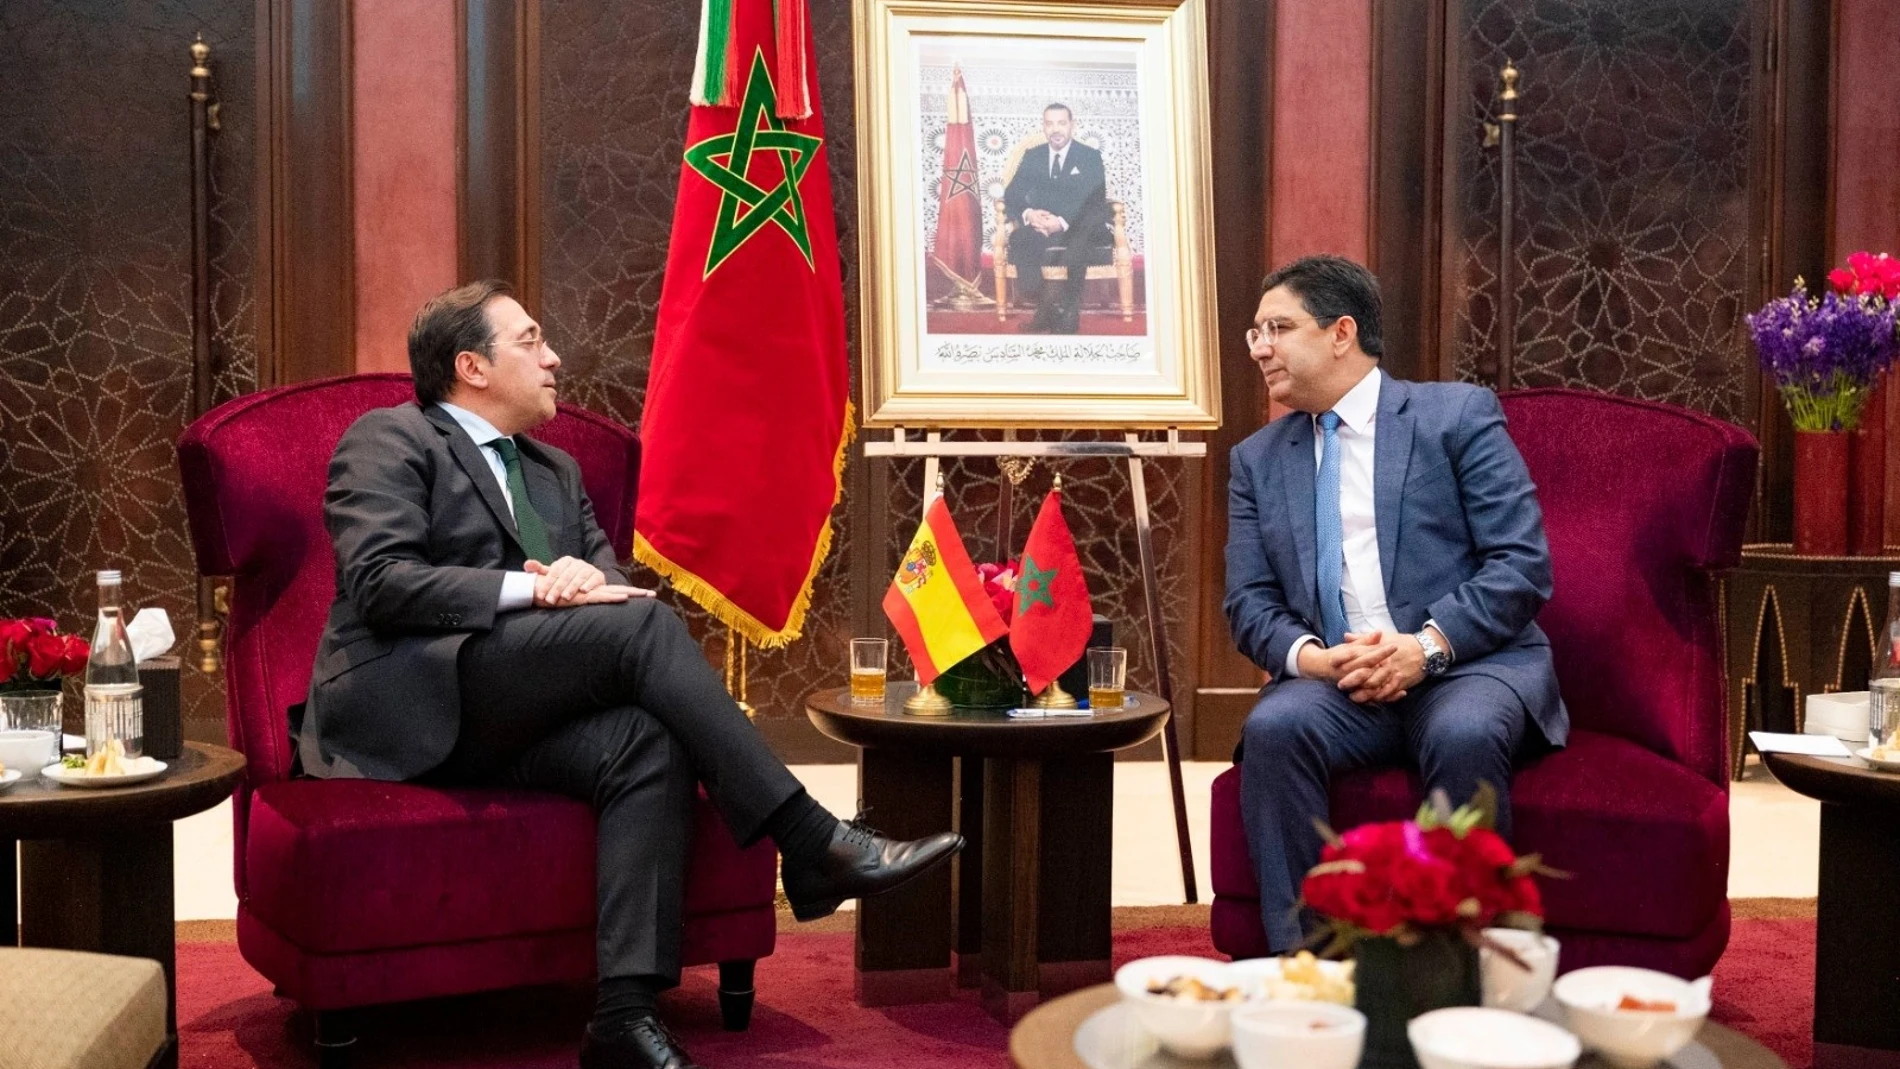 España/Marruecos.- Albares se reunirá el jueves con Burita en Rabat a invitación de Marruecos